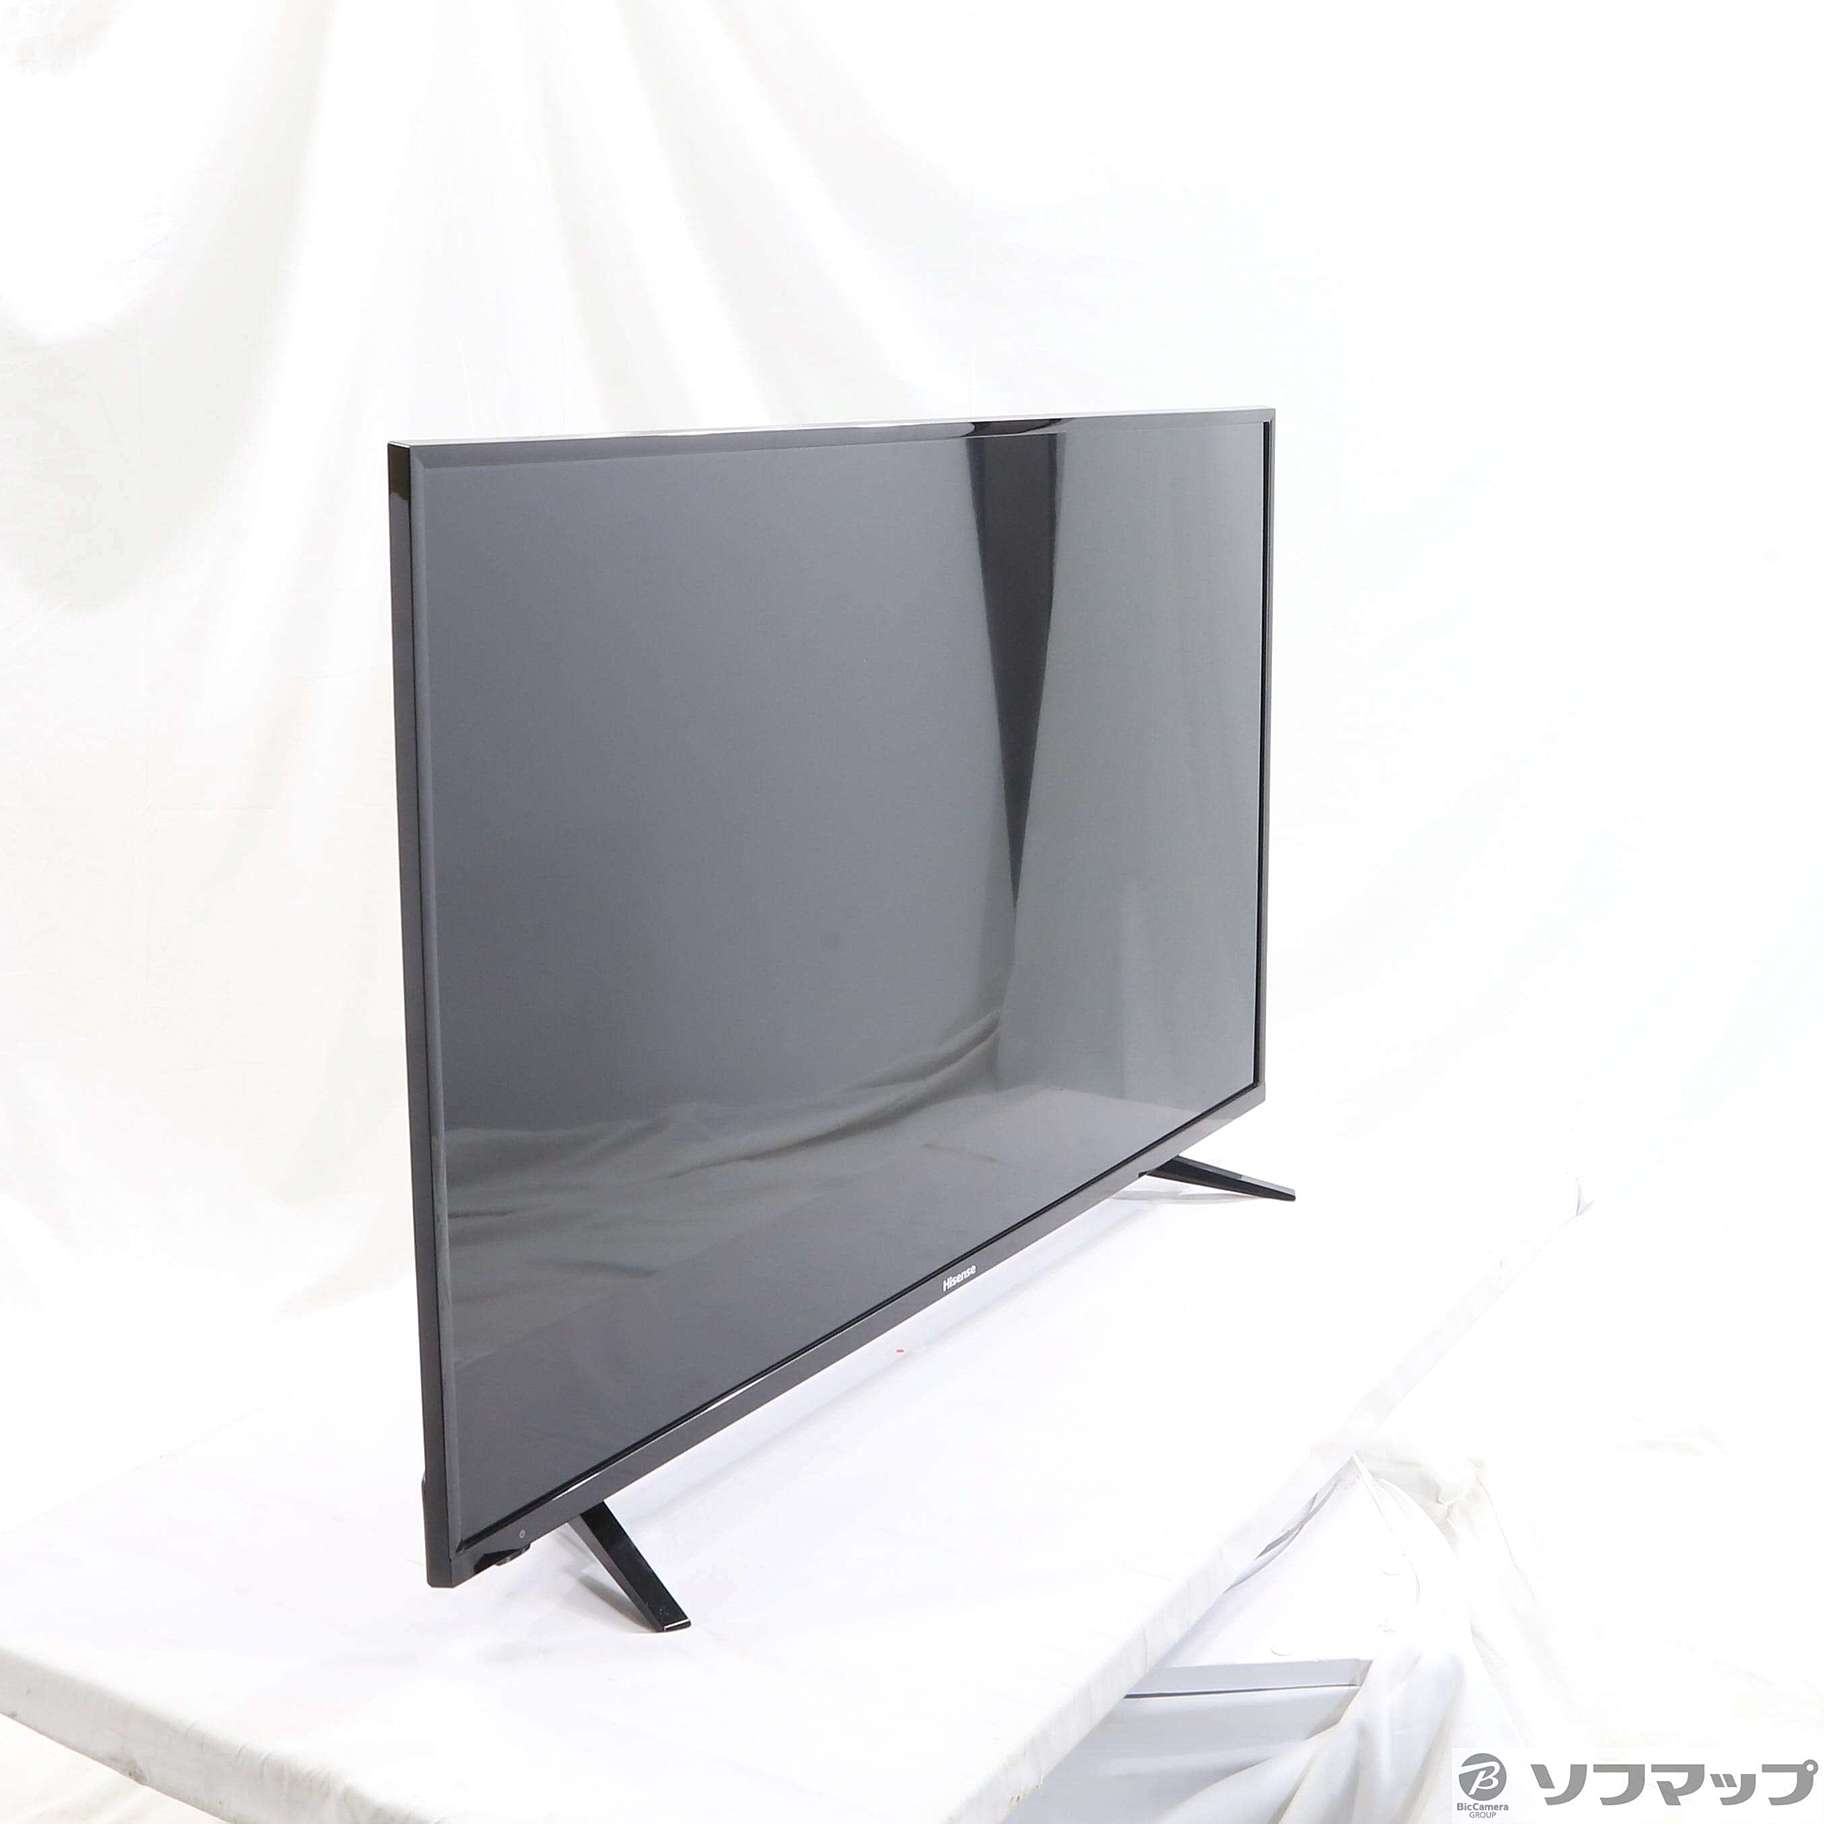 【美品】ハイセンス 43V型 液晶 テレビ 43A50 フルハイビジョン